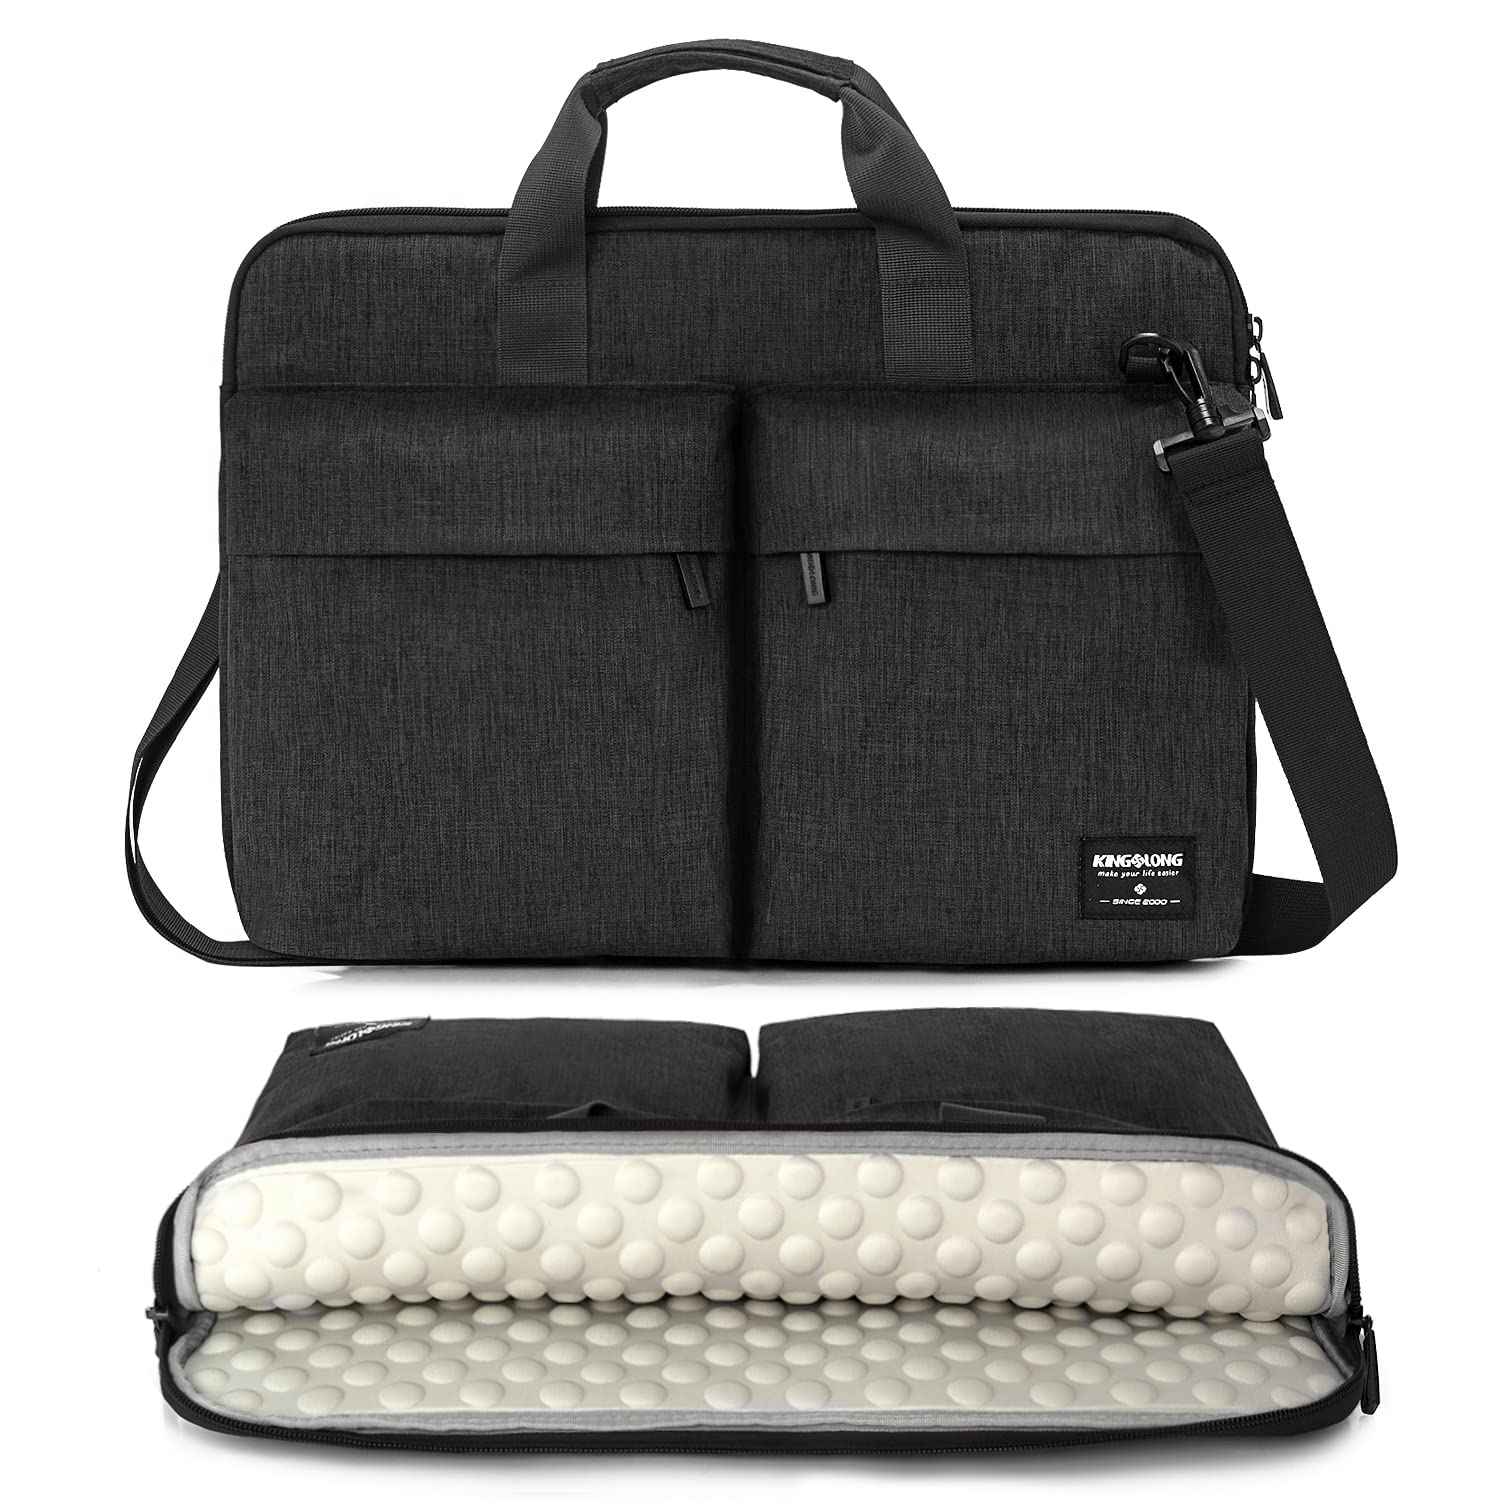 KINGSLONG 15 15.6 Inch Laptop Case Bag Sleeve, Lightweight Laptop Computer Notebook Ultrabooks Carrying Case Sleeve Handbag